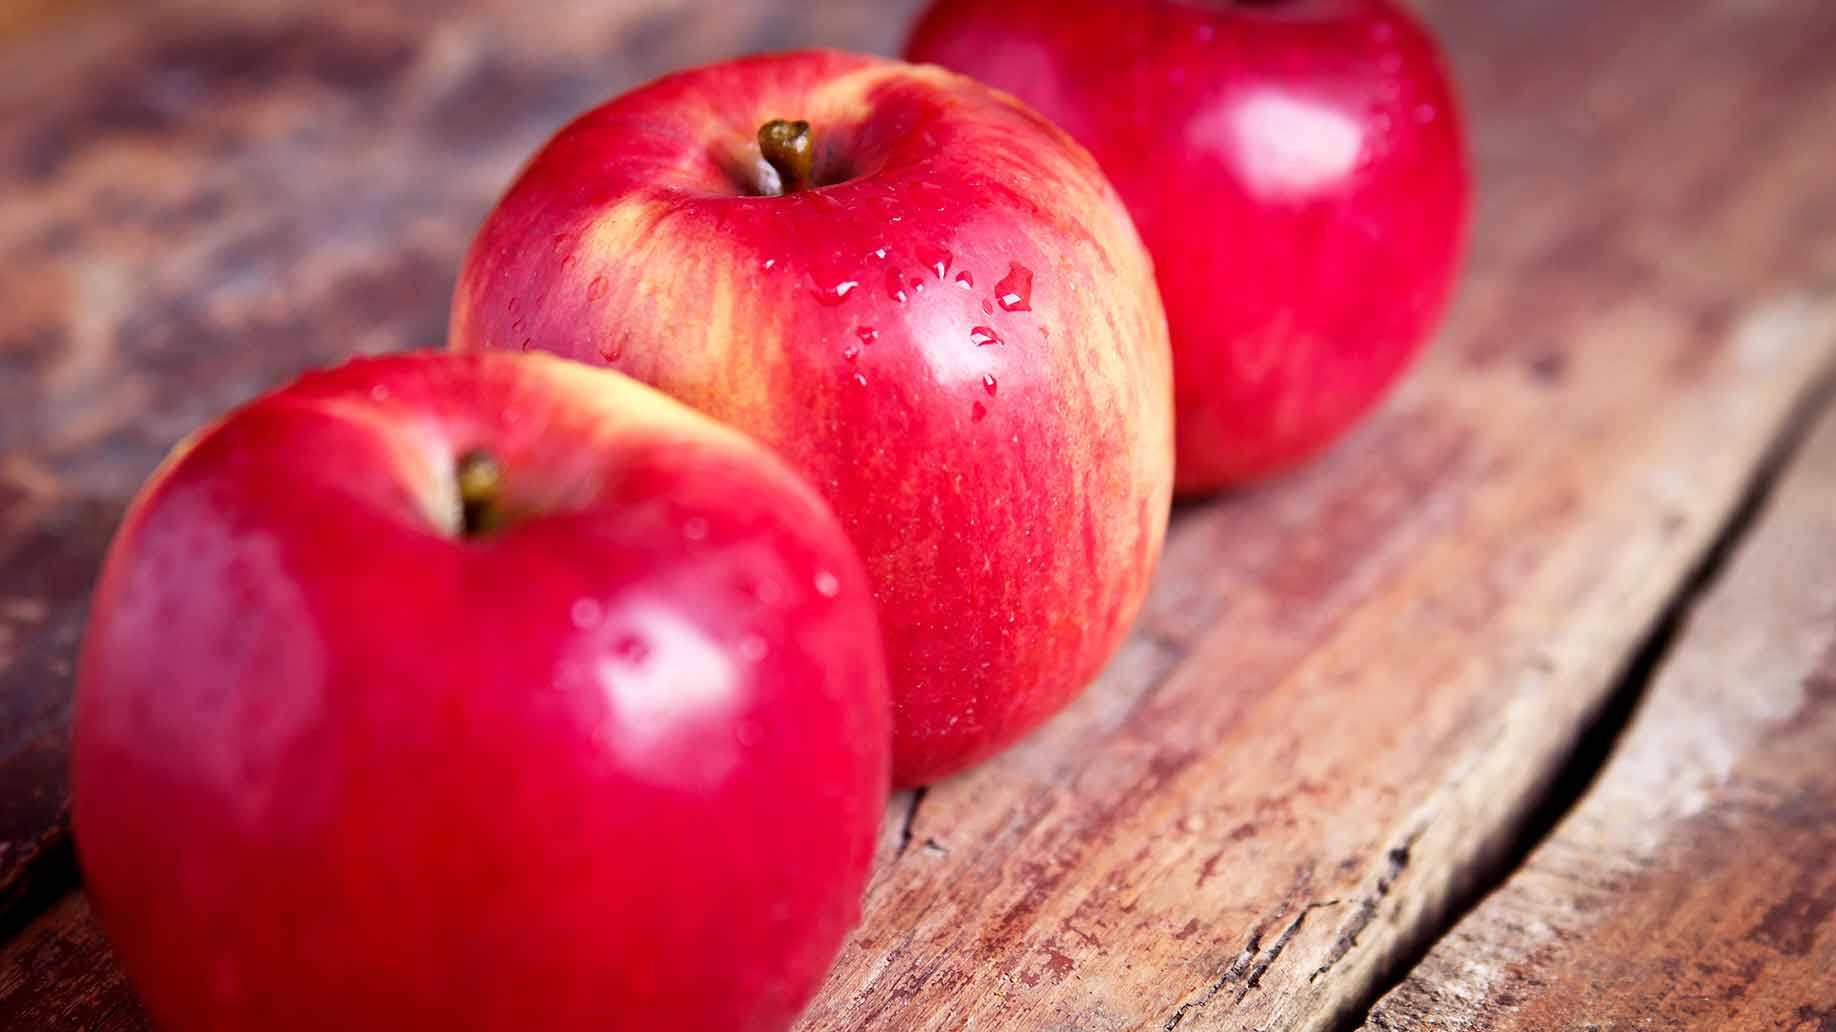 apples red fresh juicy fresh fruit